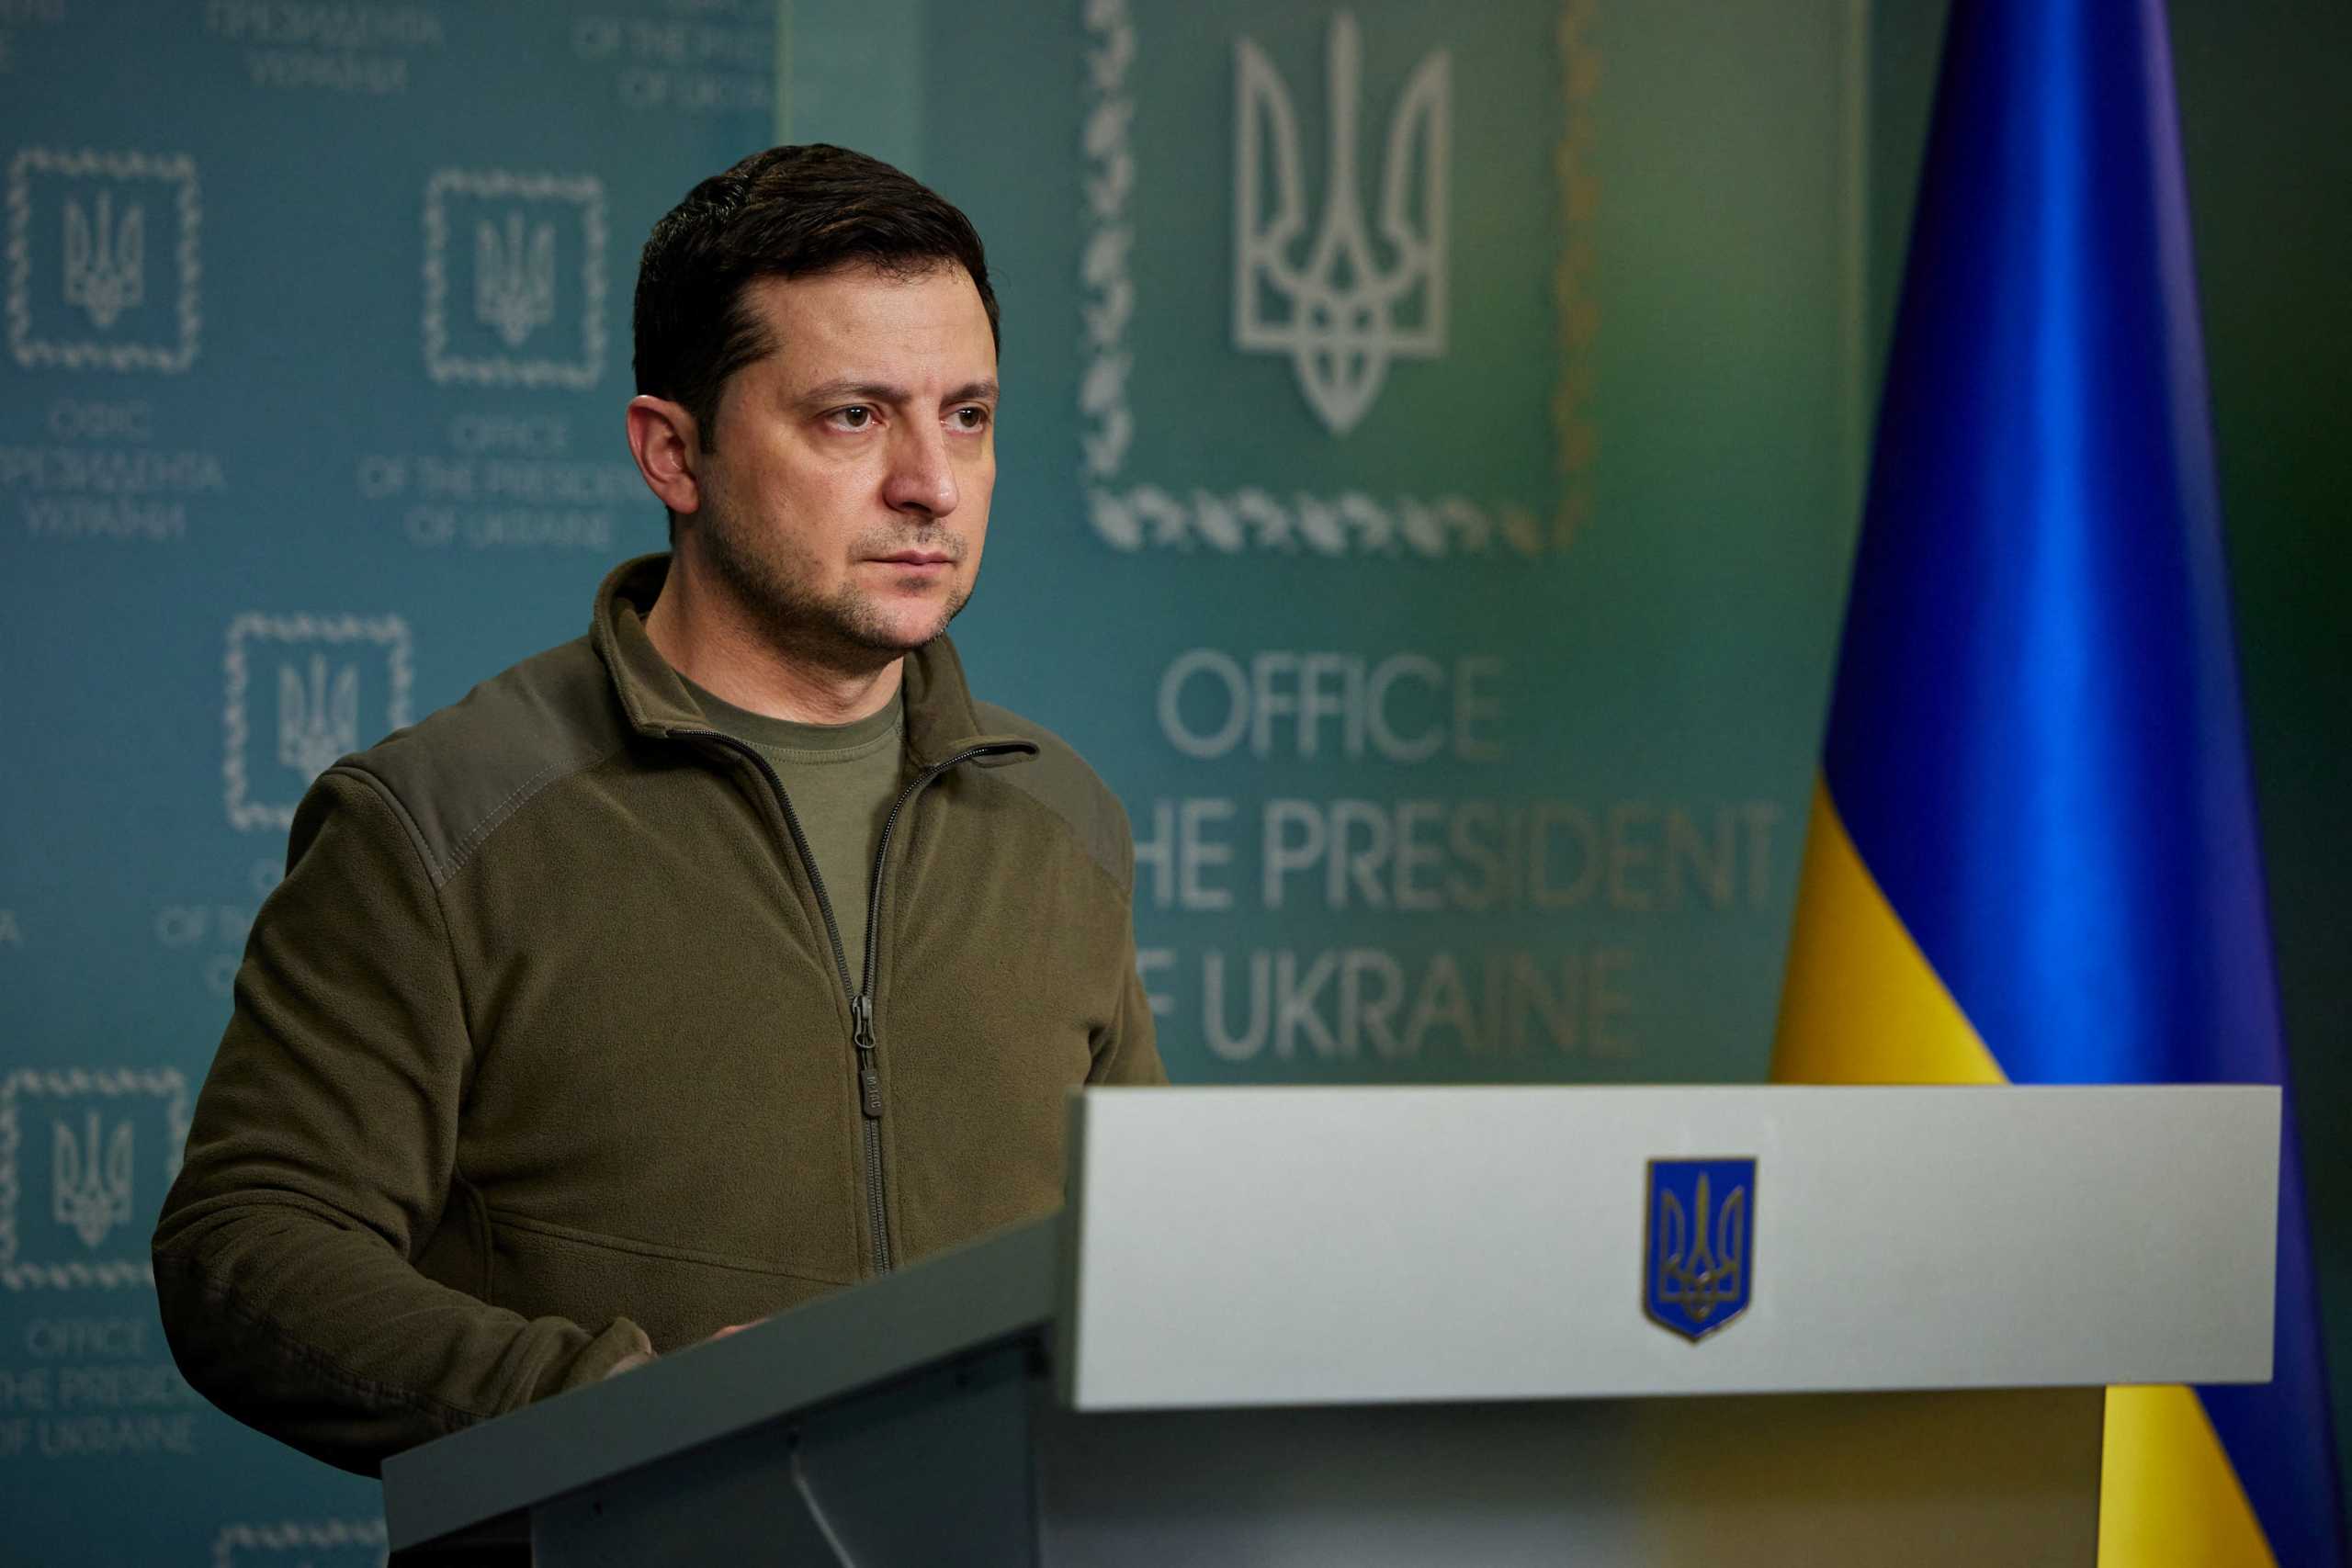 Πόλεμος στην Ουκρανία: Η Ρωσία ετοιμάζεται να βομβαρδίσει την Οδησσό, ανέφερε ο Ζελένσκι